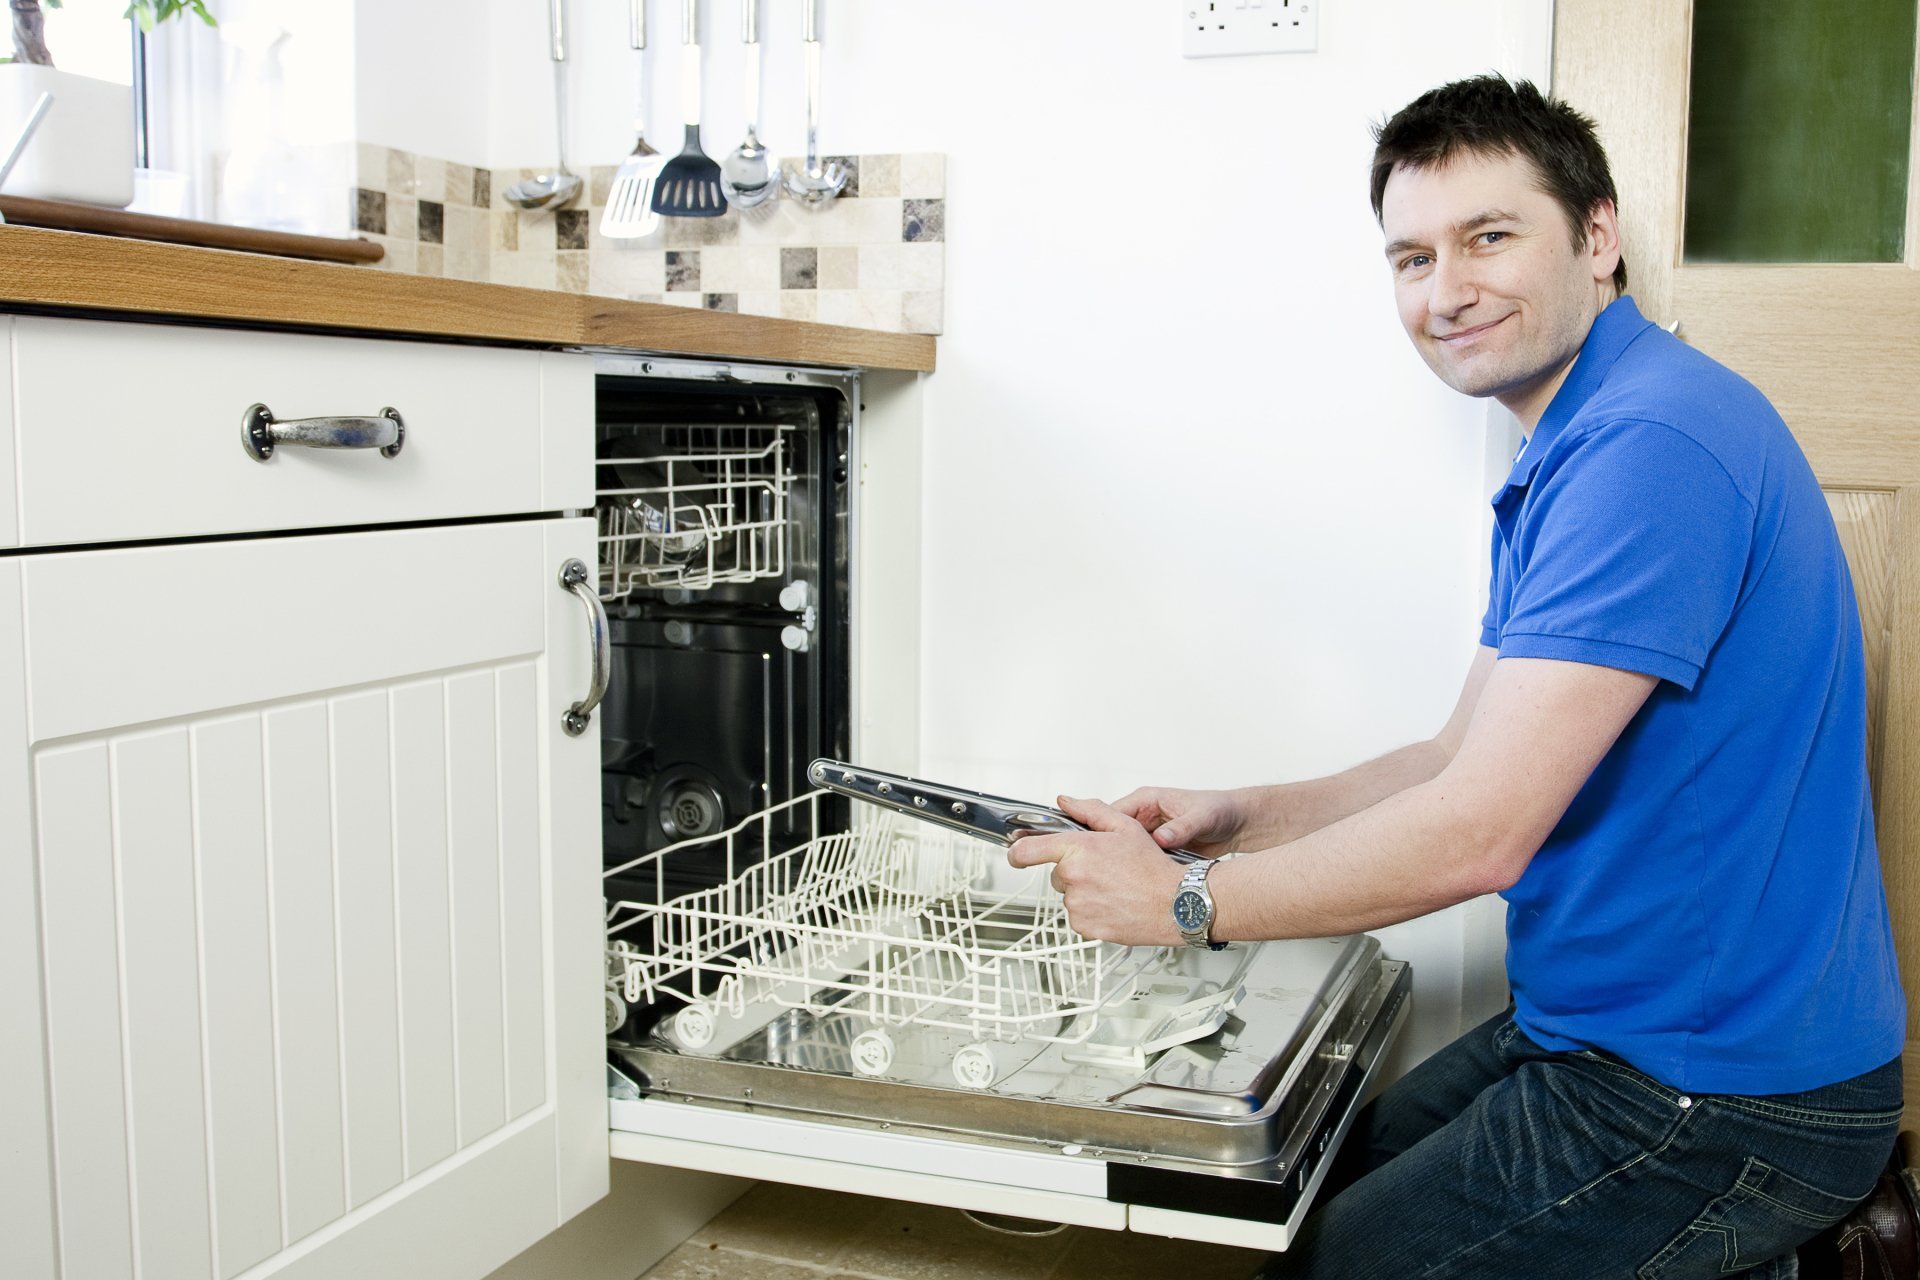 Ремонт посудомоечной машинки